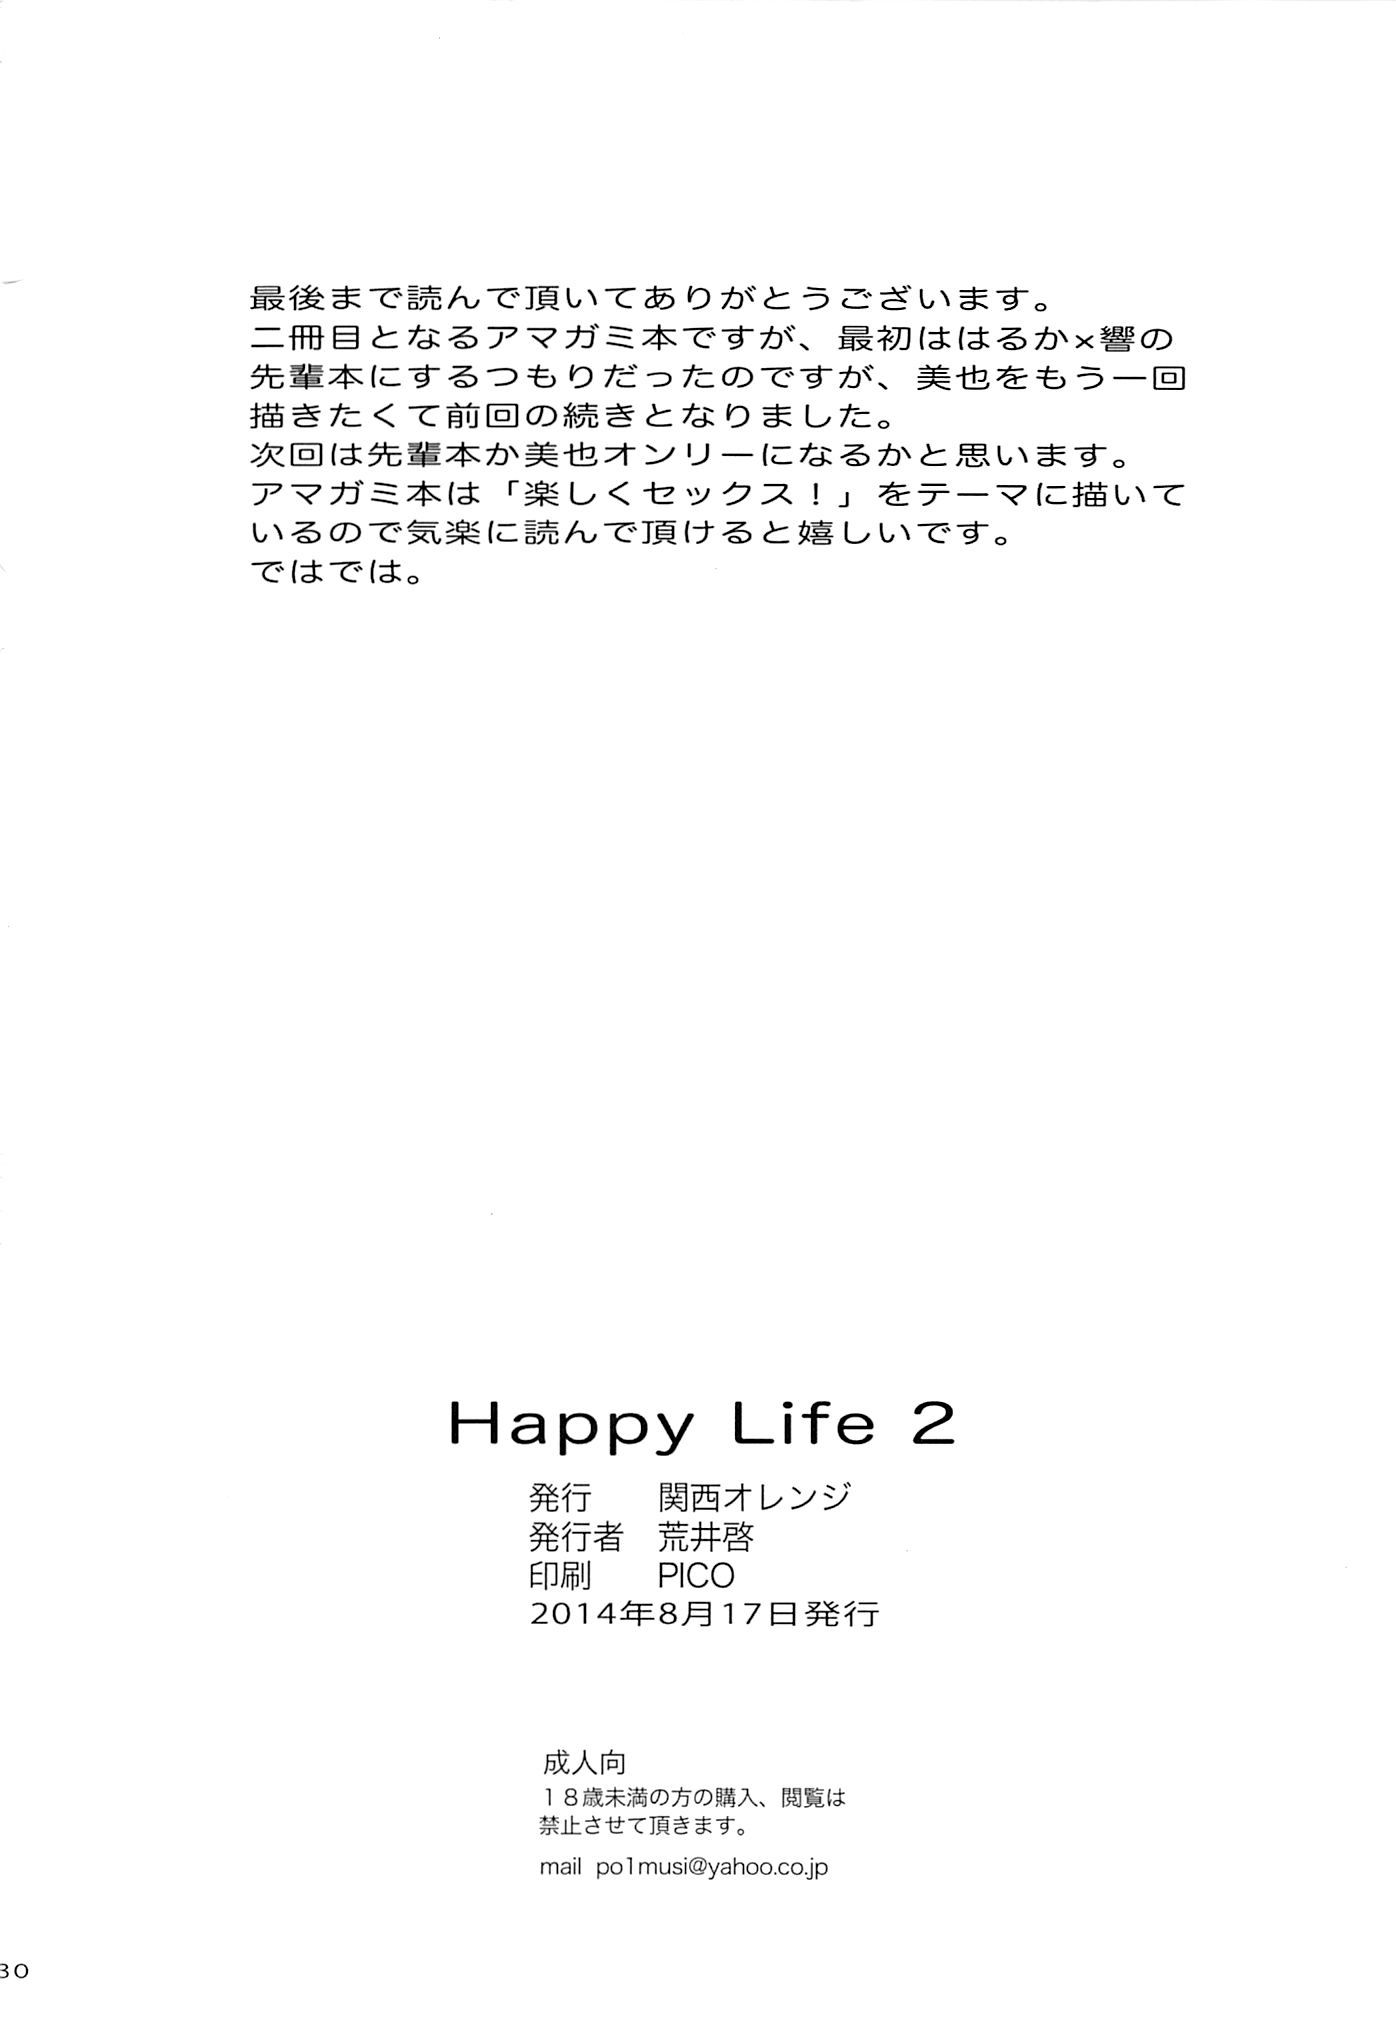 HaPPY LIFe 2